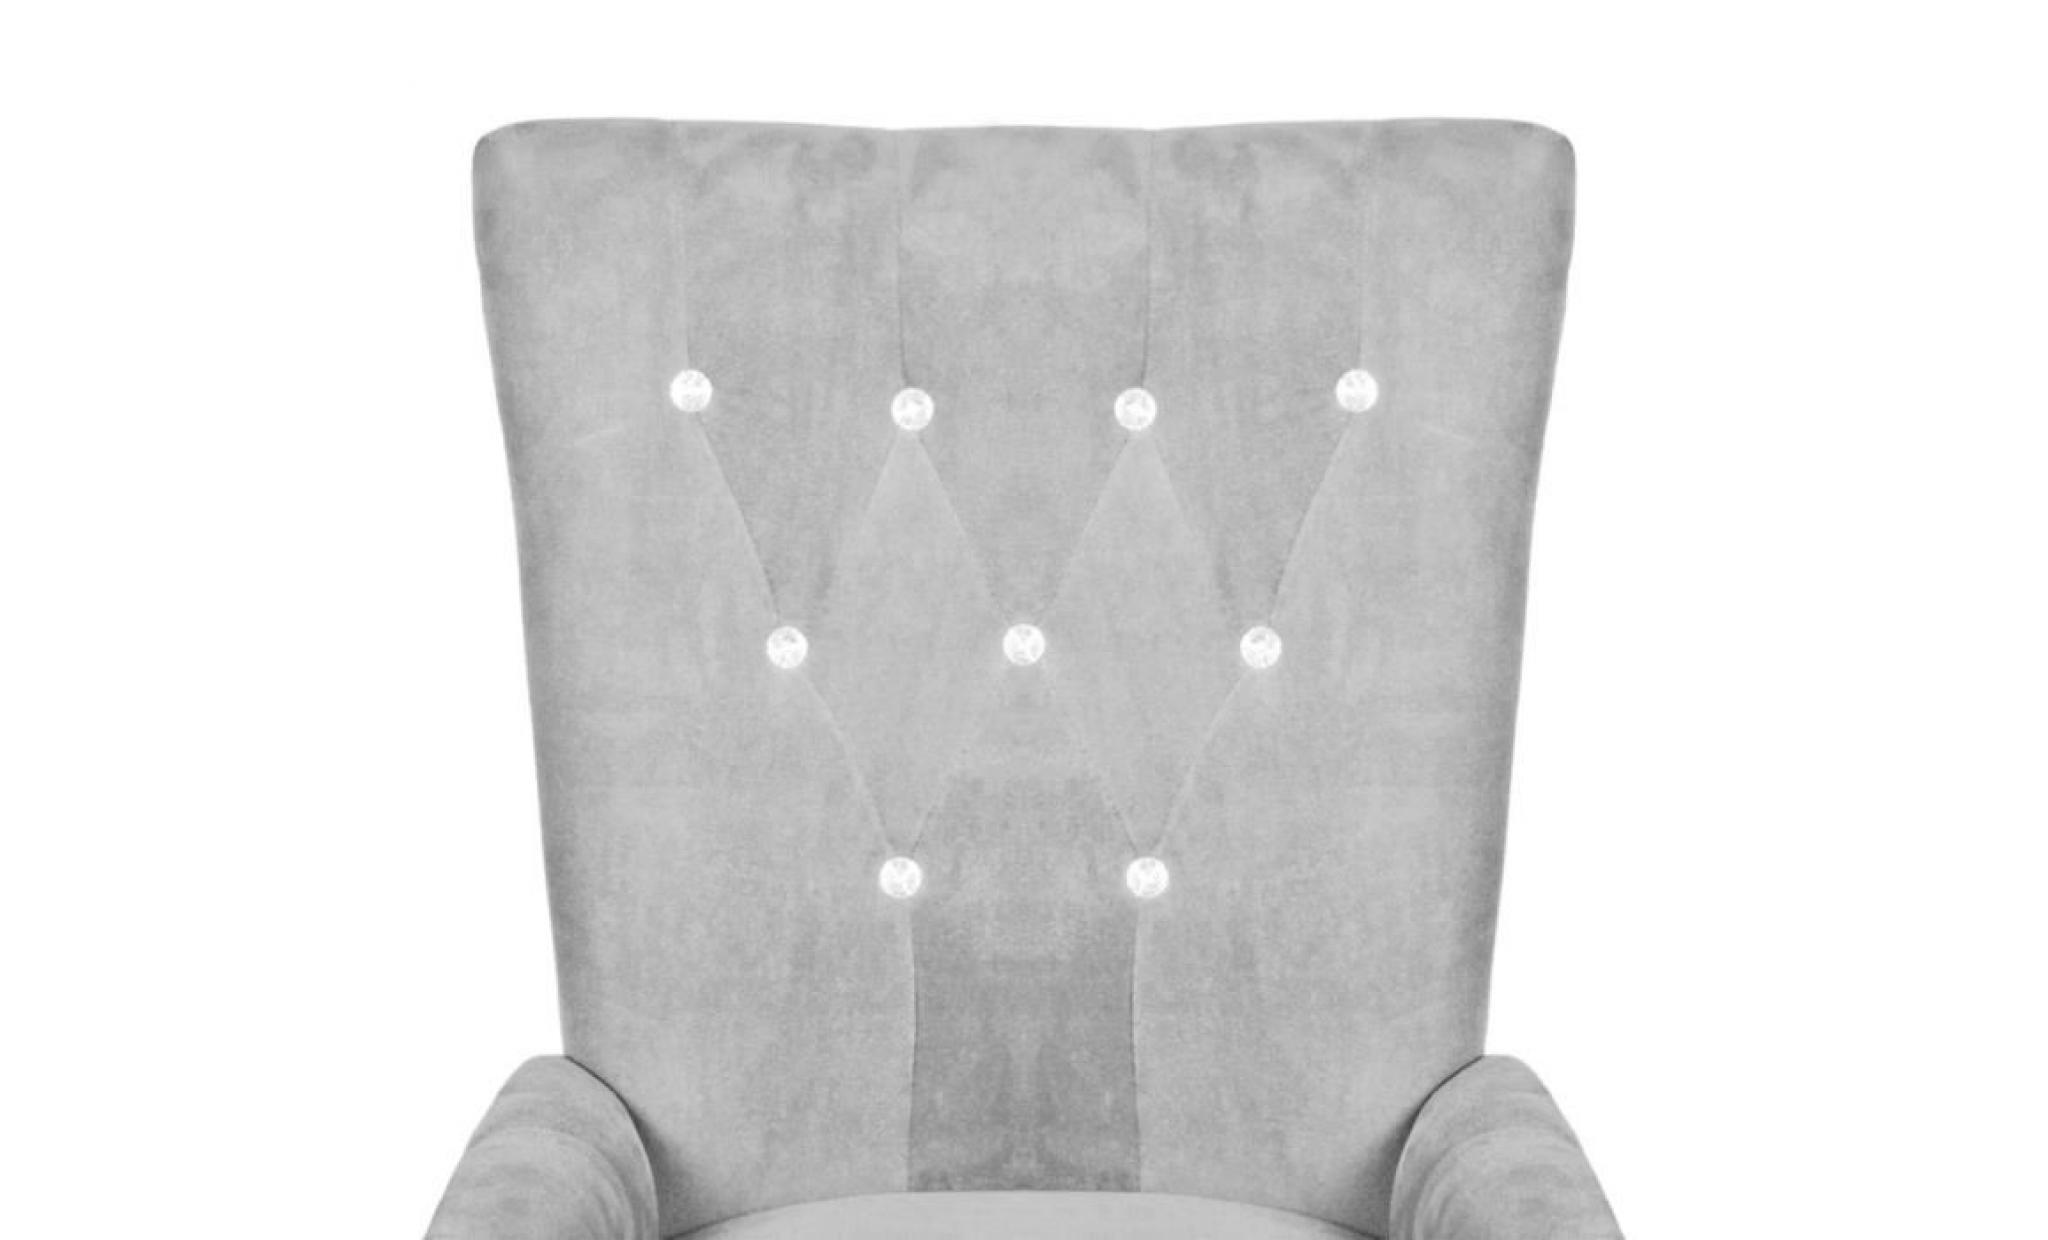 fauteuil avec cadre fauteuil scandinave fauteuil de jardin en bois velours argenté fauteuil de bureau pas cher